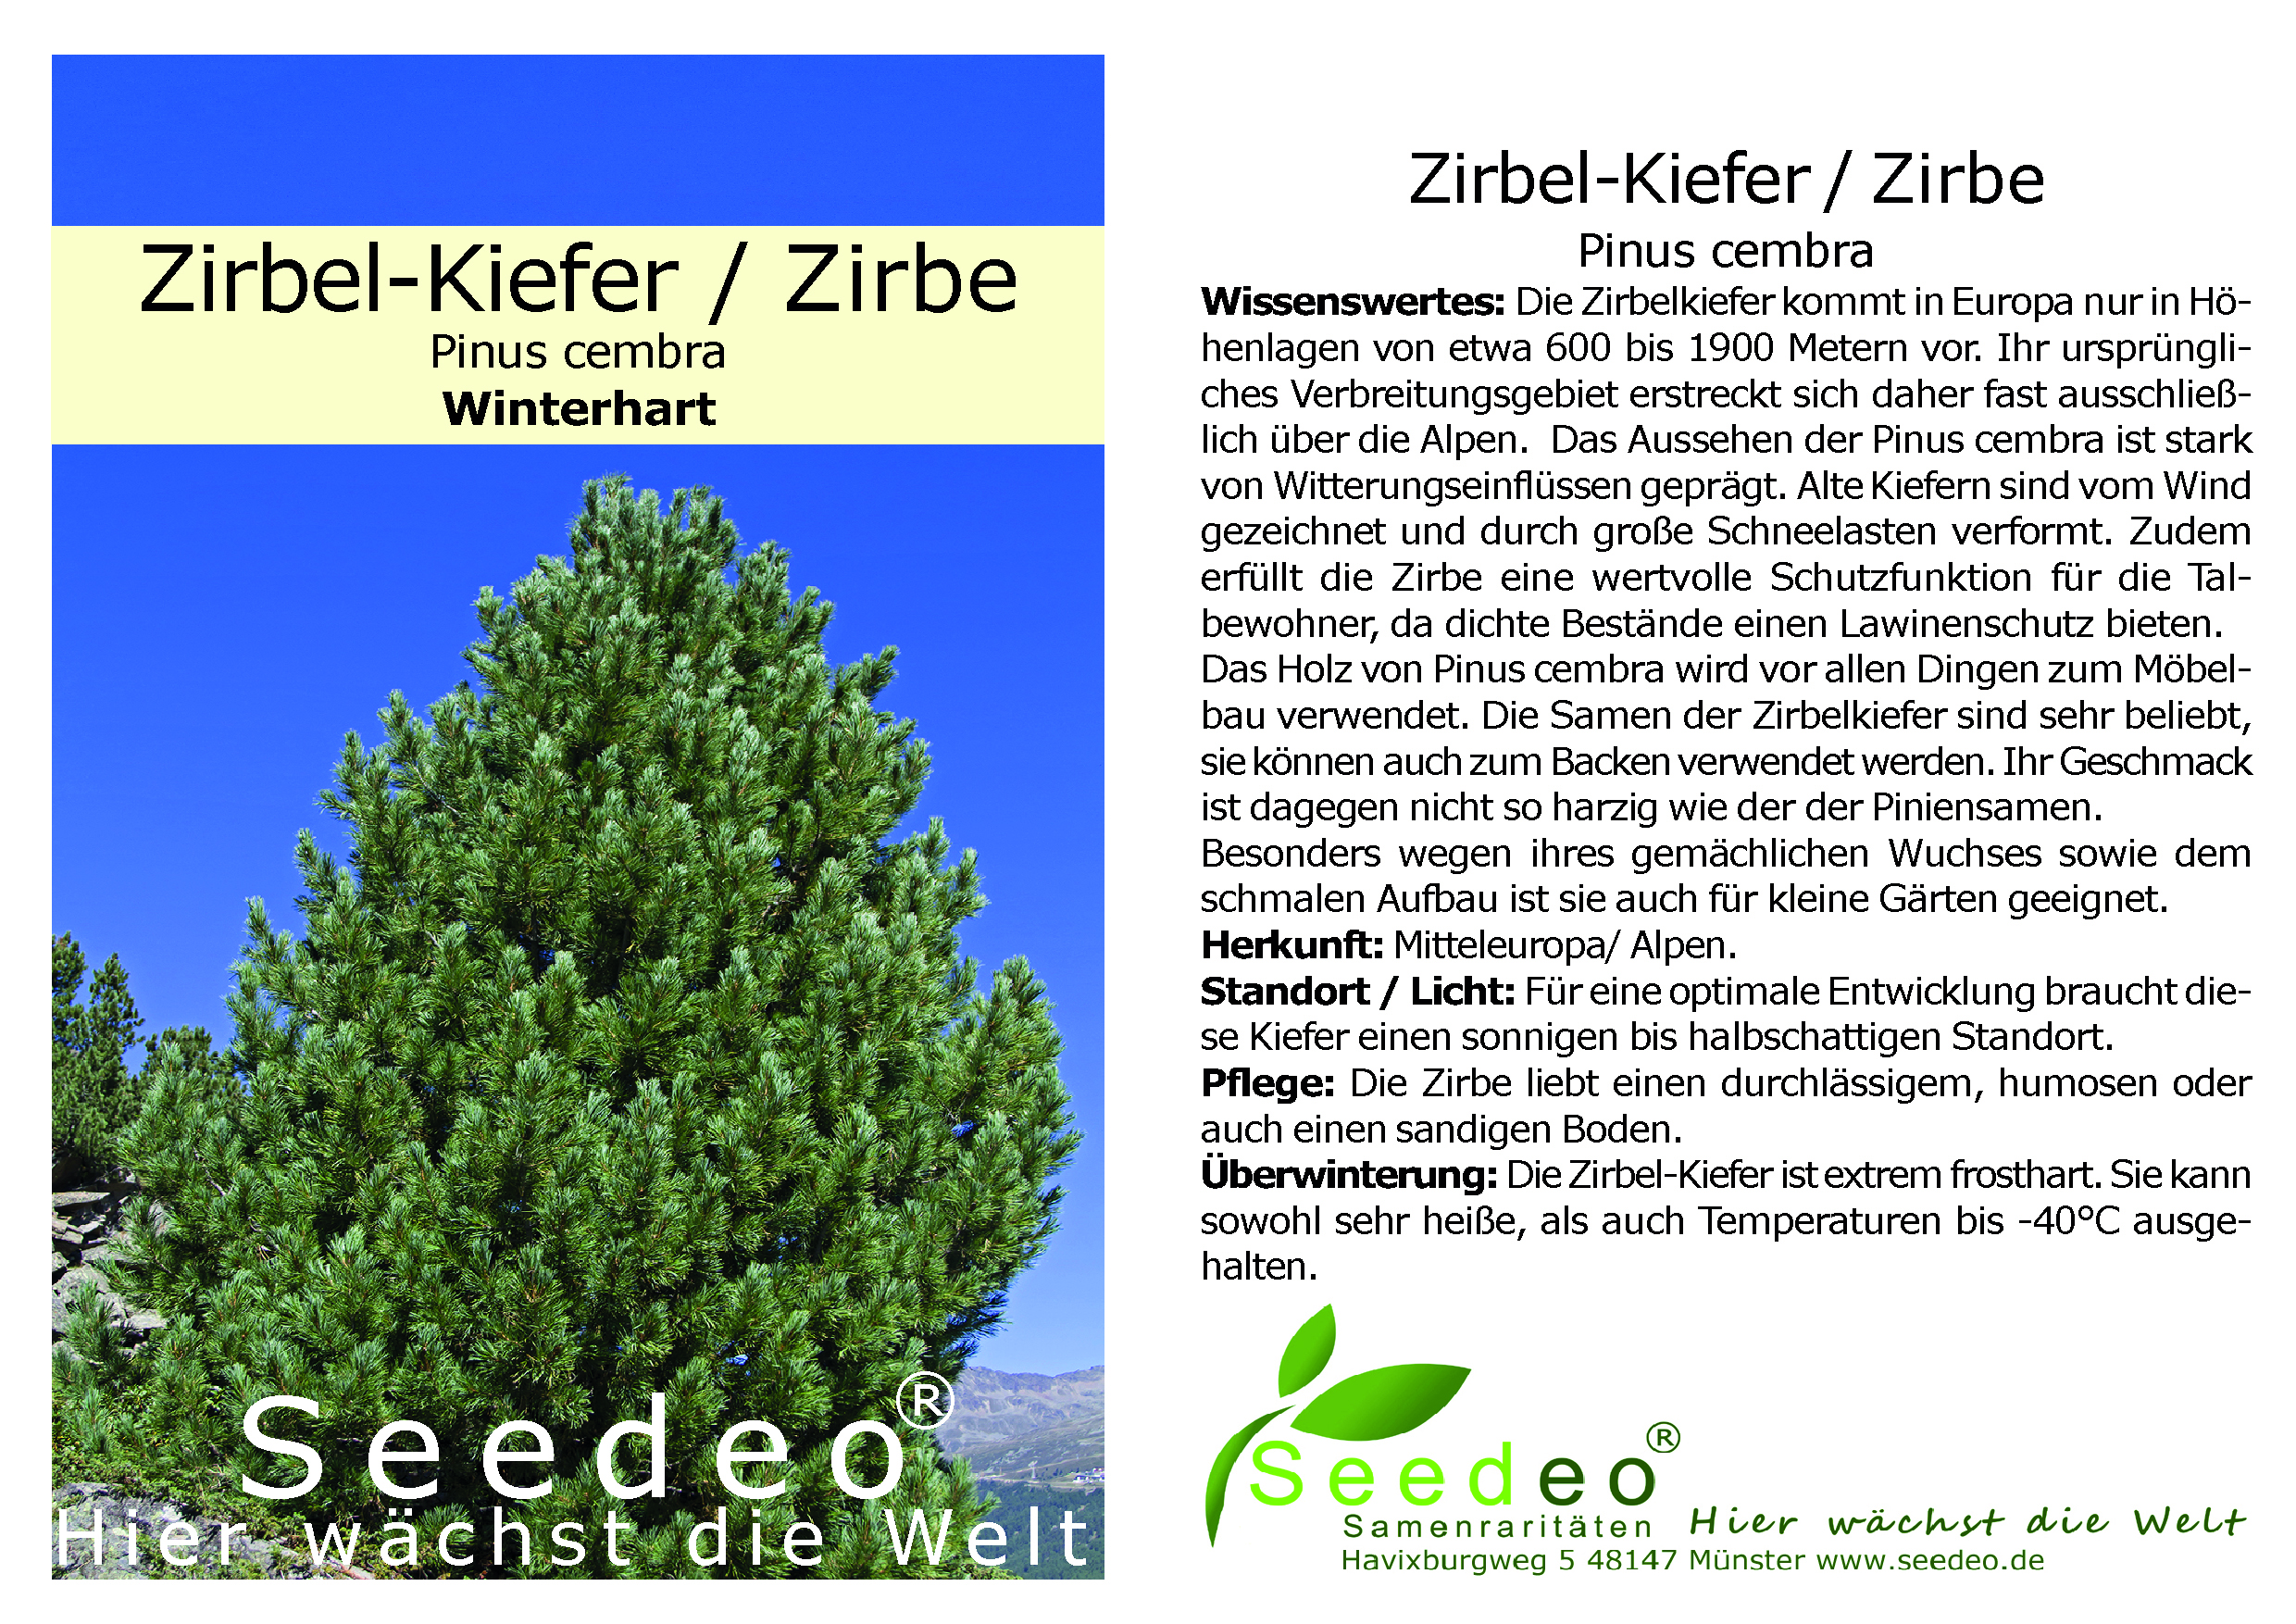 Seedeo® Zirbel-Kiefer/Zirbe (Pinus cembra) ca. 10 cm hoch Geschenkedition Topf mit Sternen